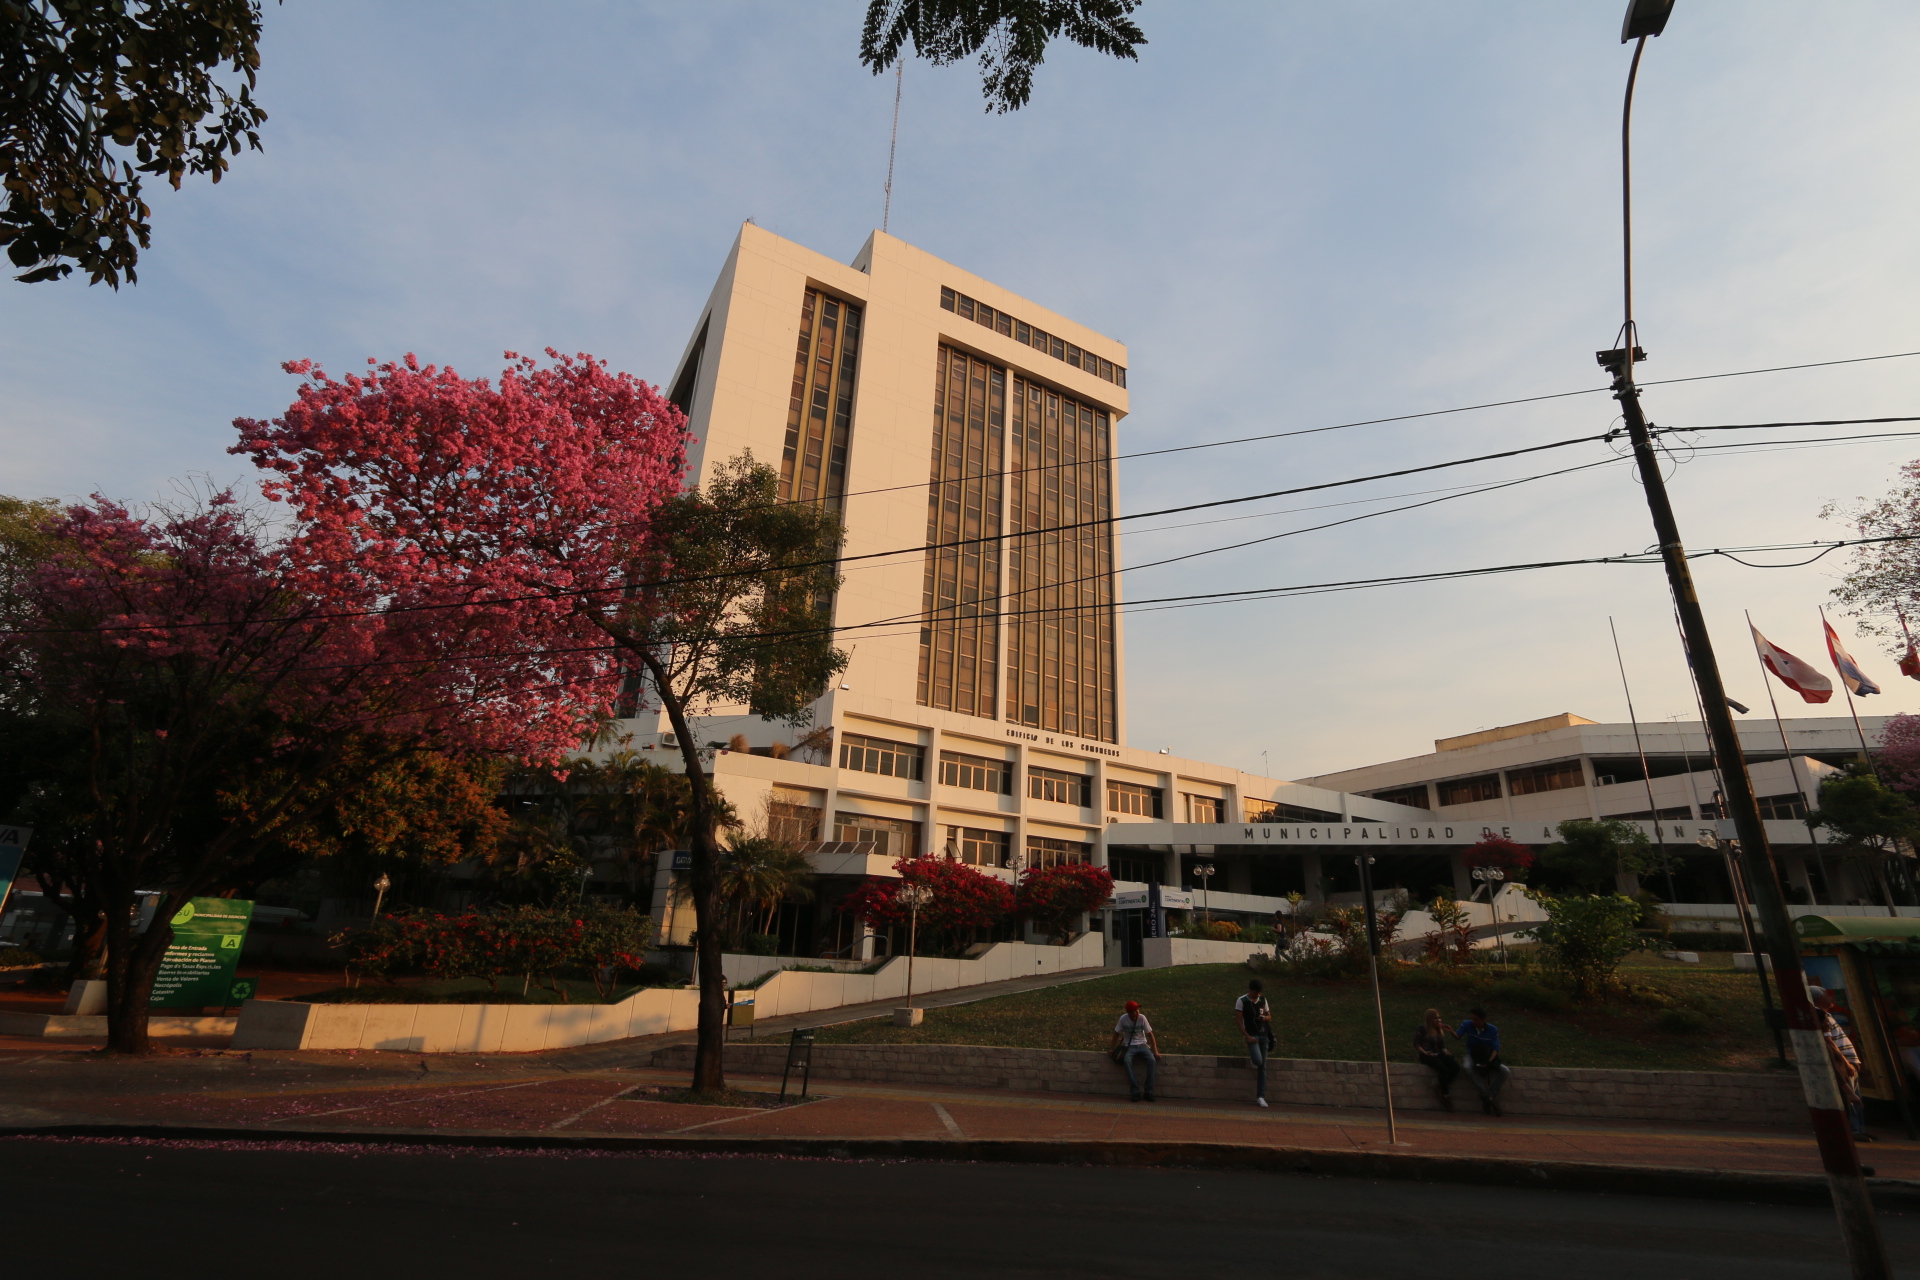 Intendente resuelve apelar el laudo de Centro de Arbitraje y Mediación del Paraguay por caso ITV S.A